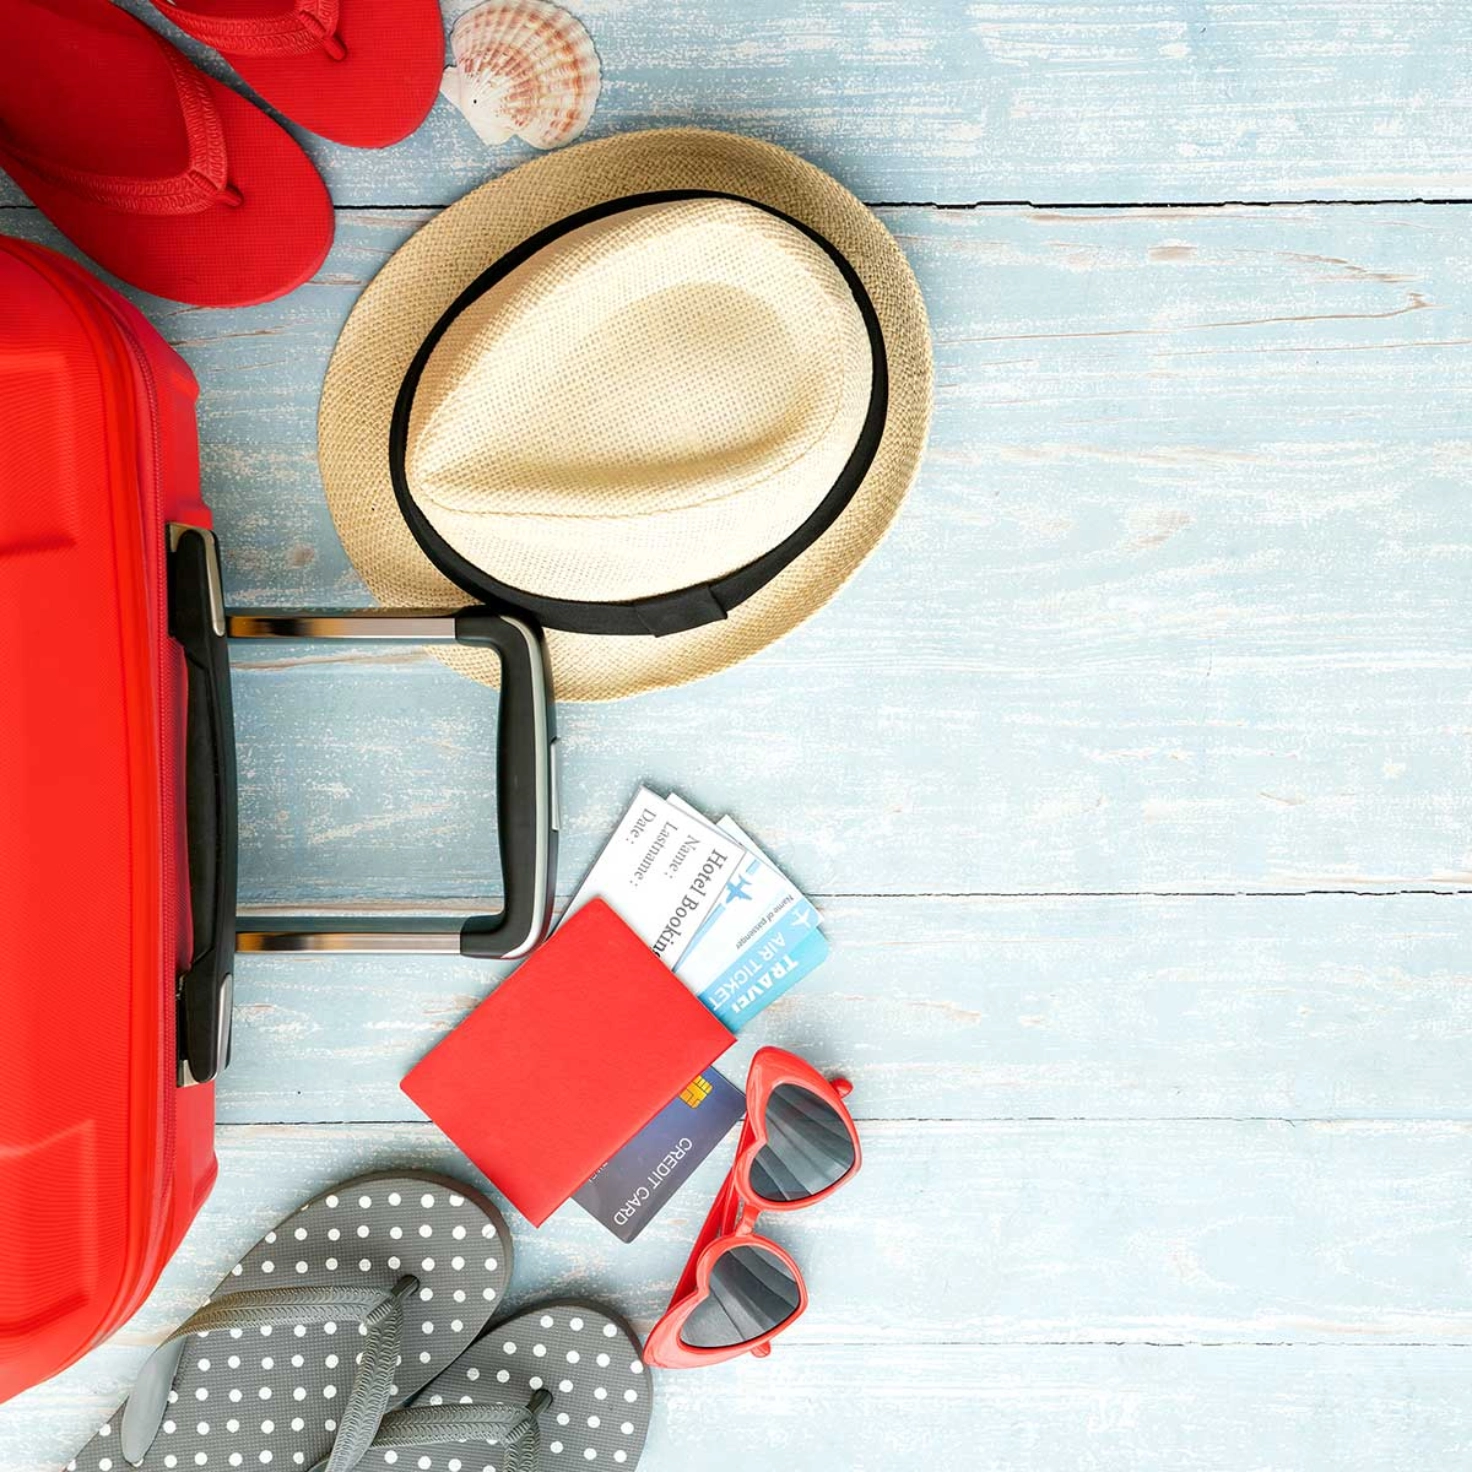 Une valise posée sur le sol, à côté de laquelle se trouvent des tongs, un chapeau et un passeport.